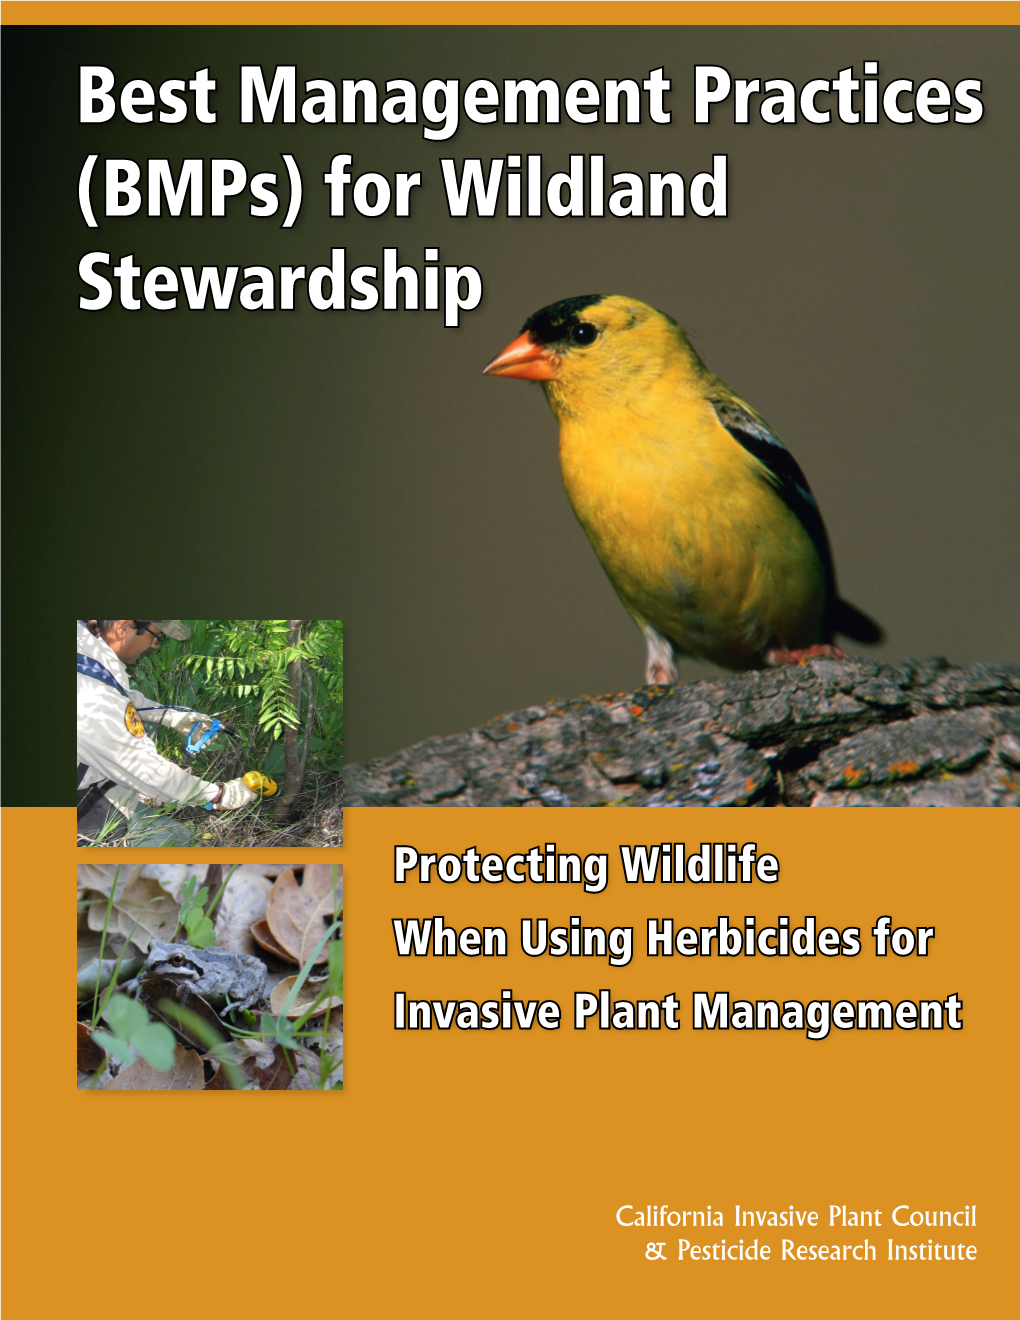 Bmps) for Wildland Stewardship